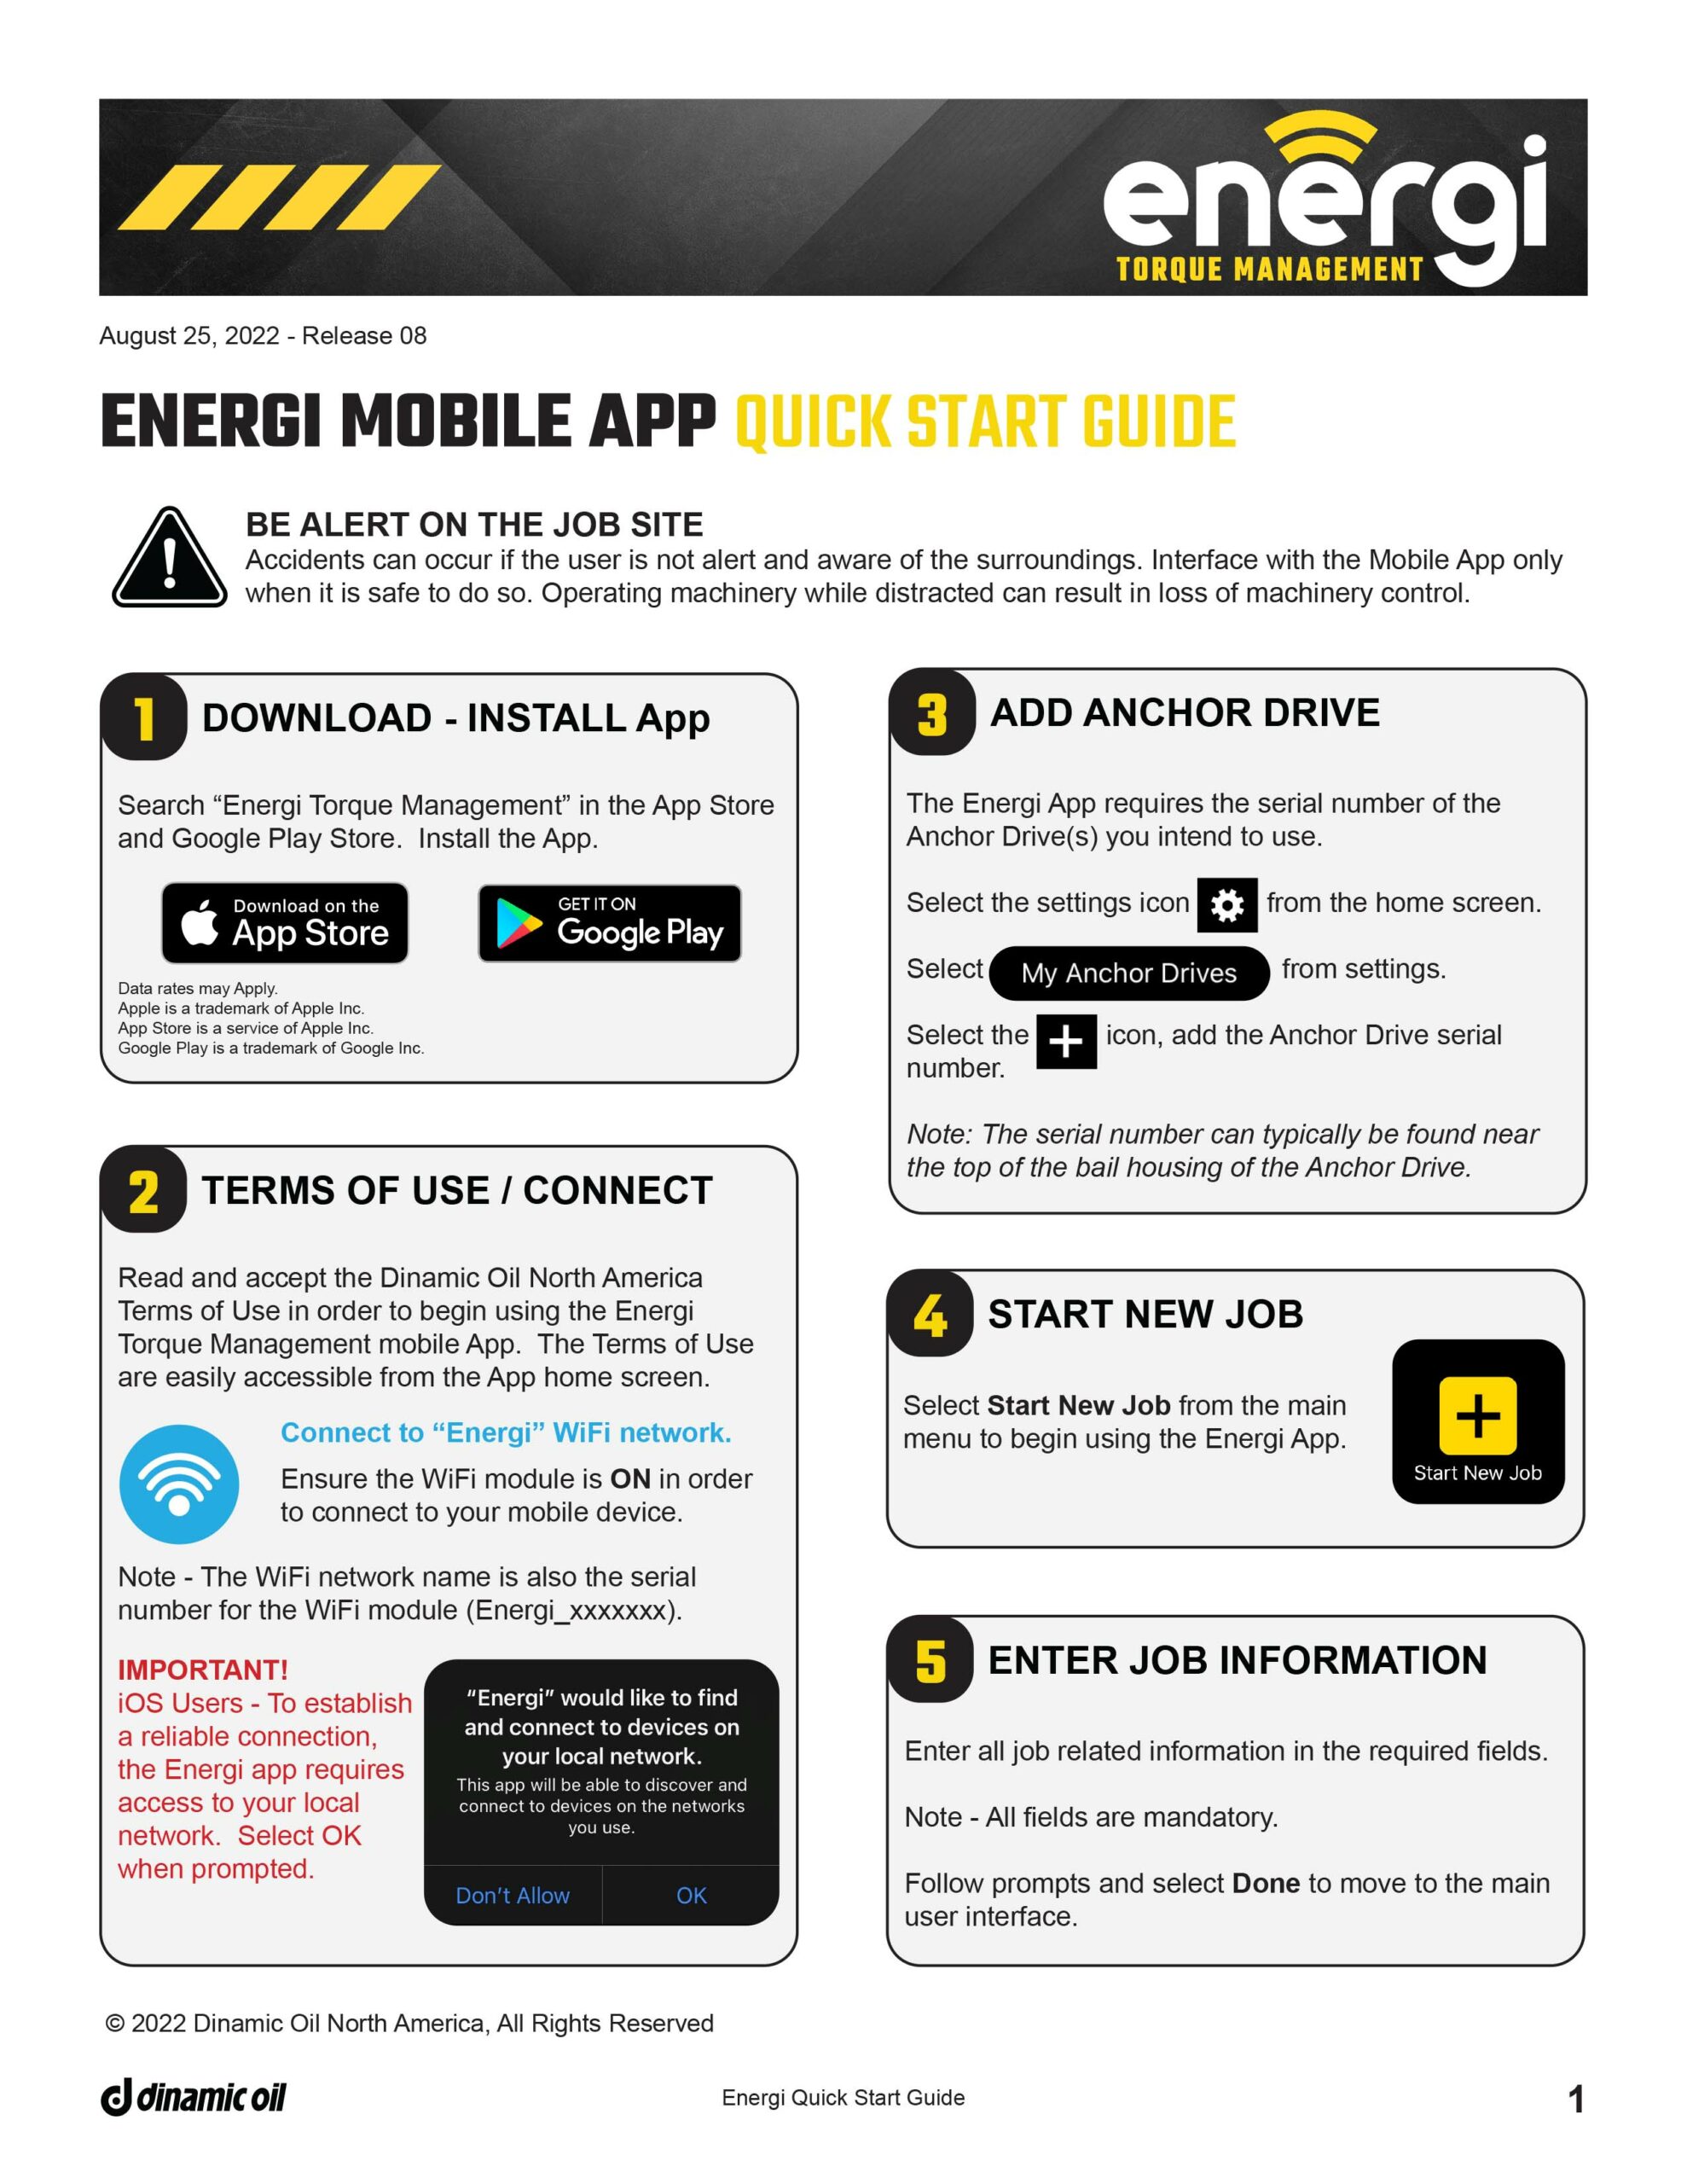 Energi Mobile App Quick Start Guide